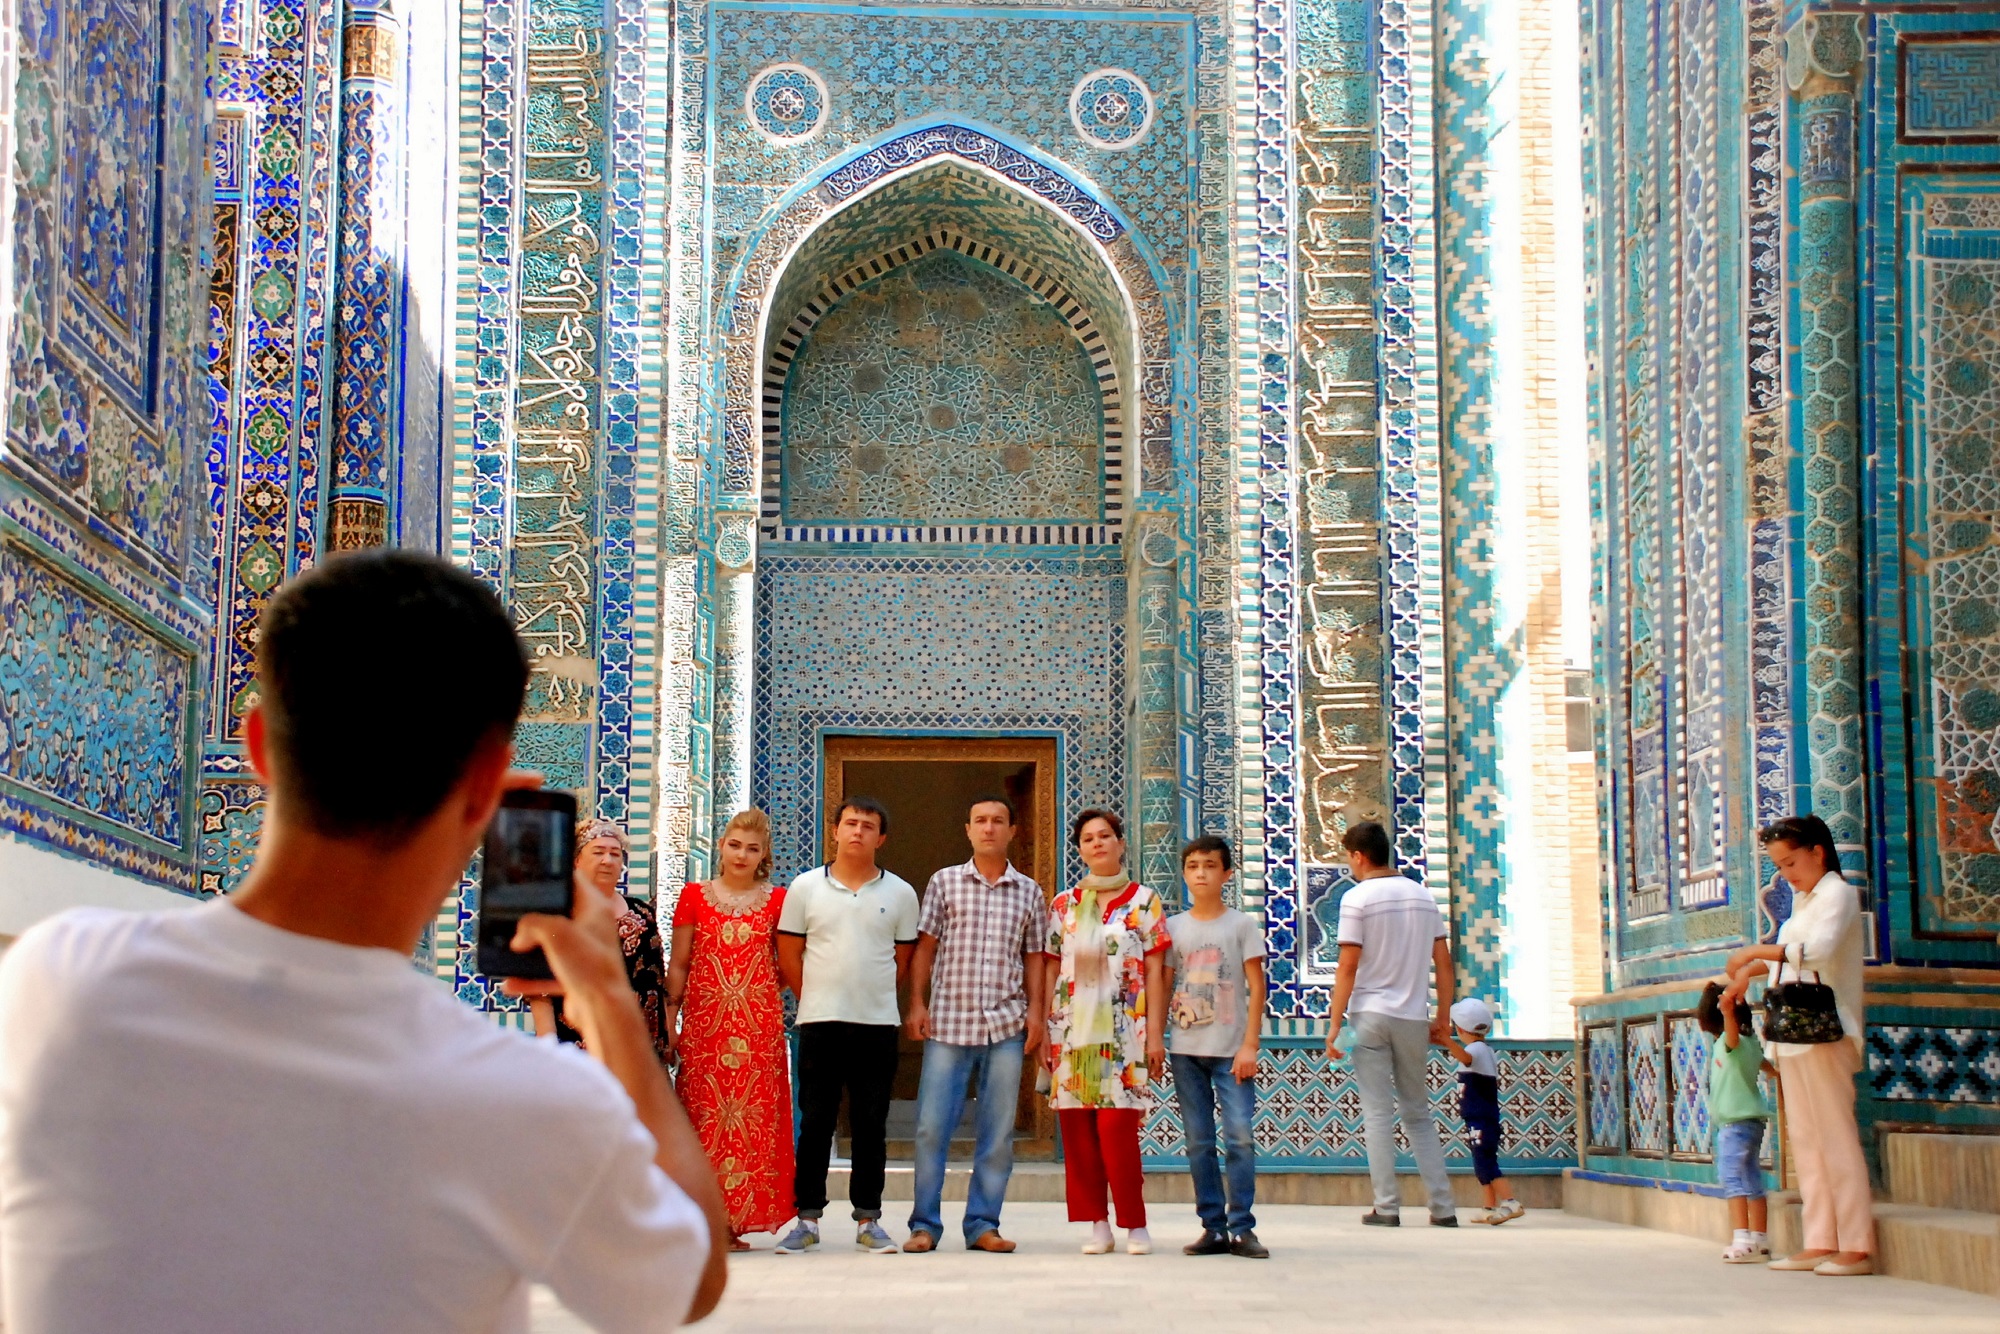 Day 4: Bukhara